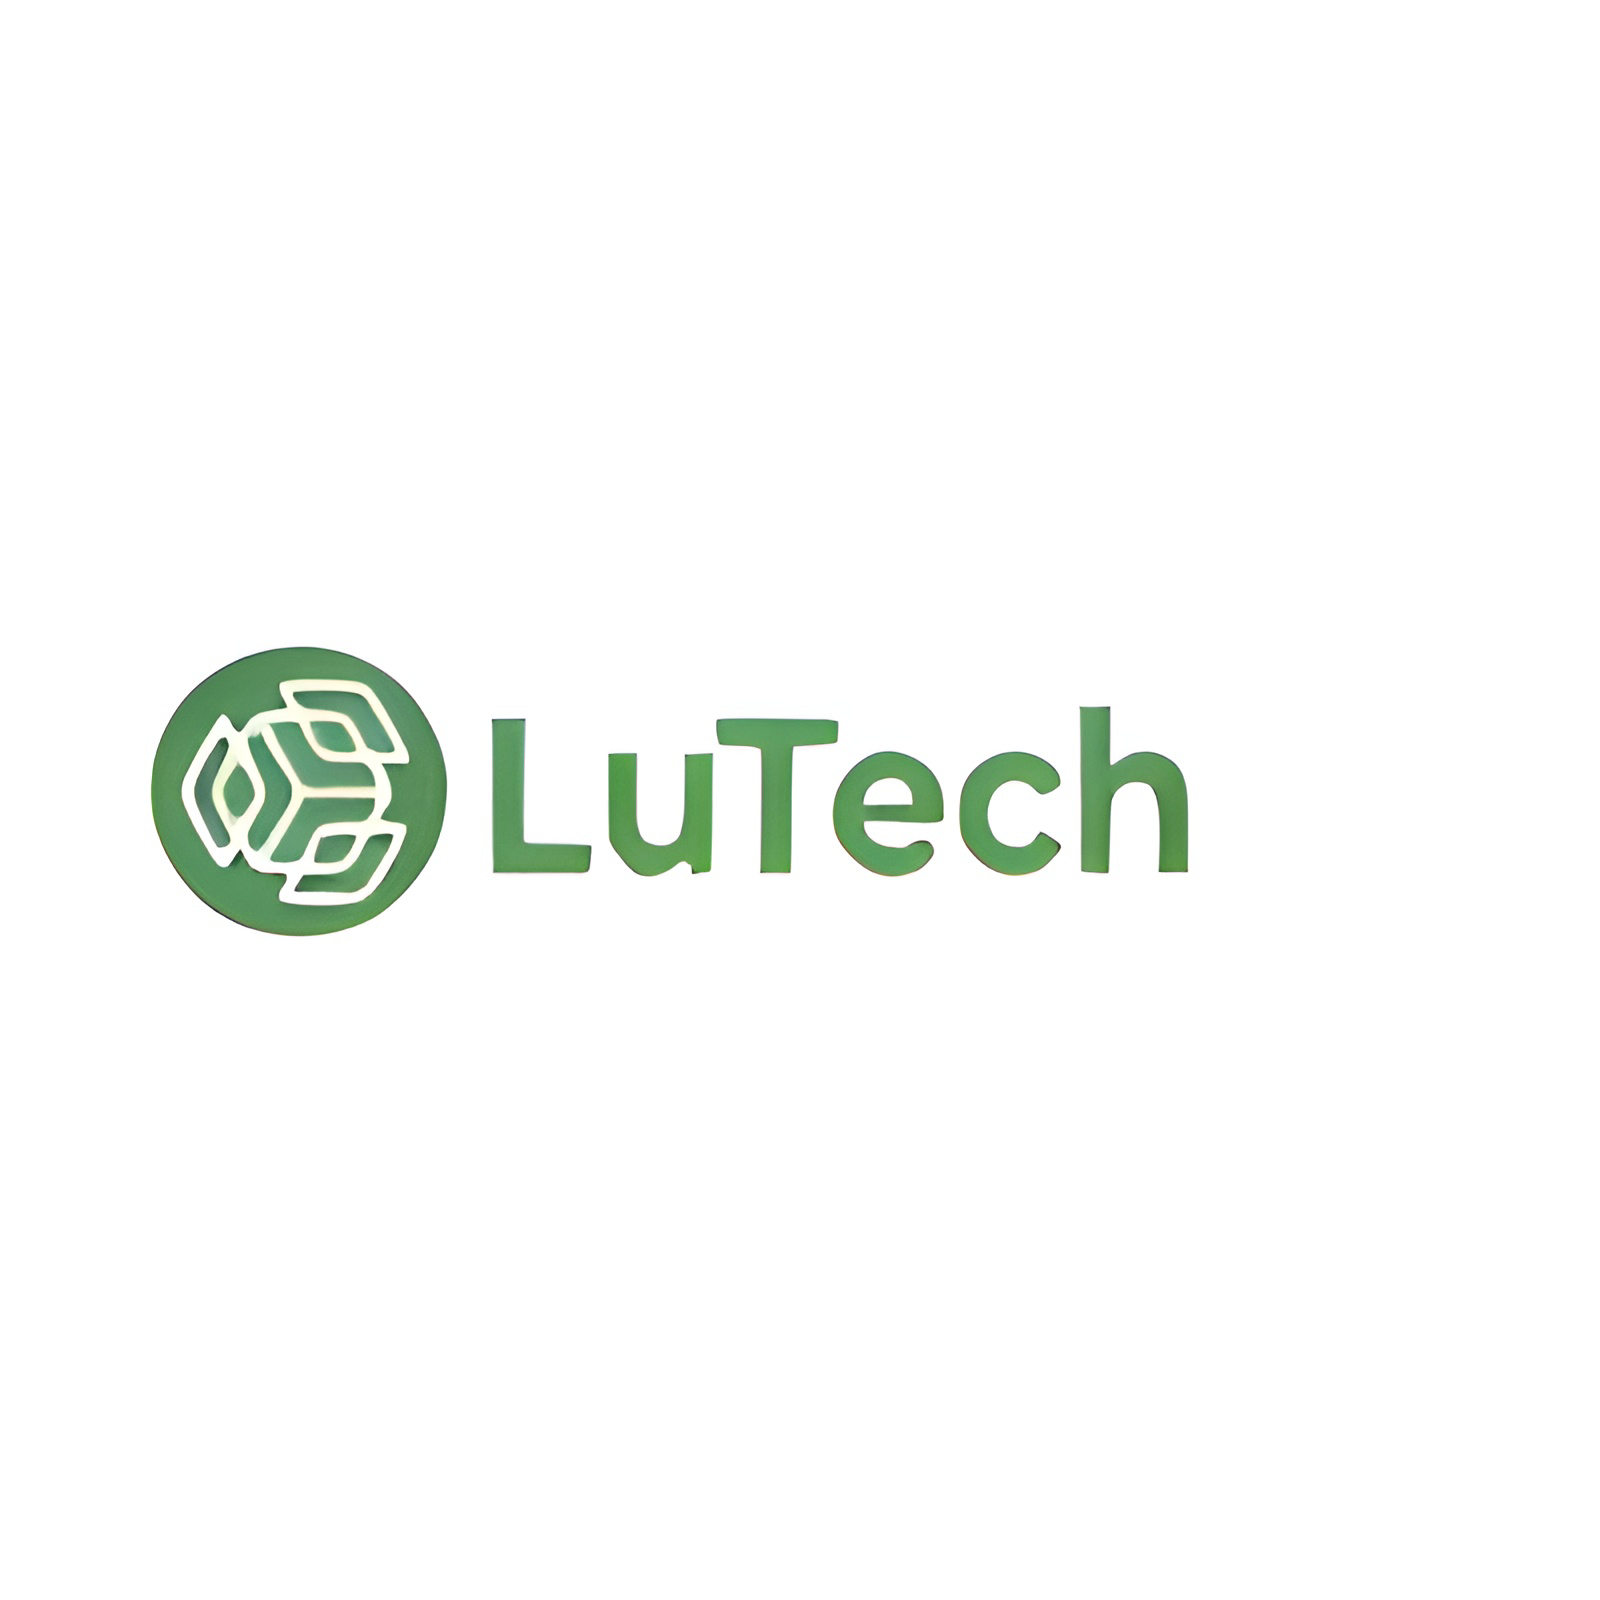 Lutech Global